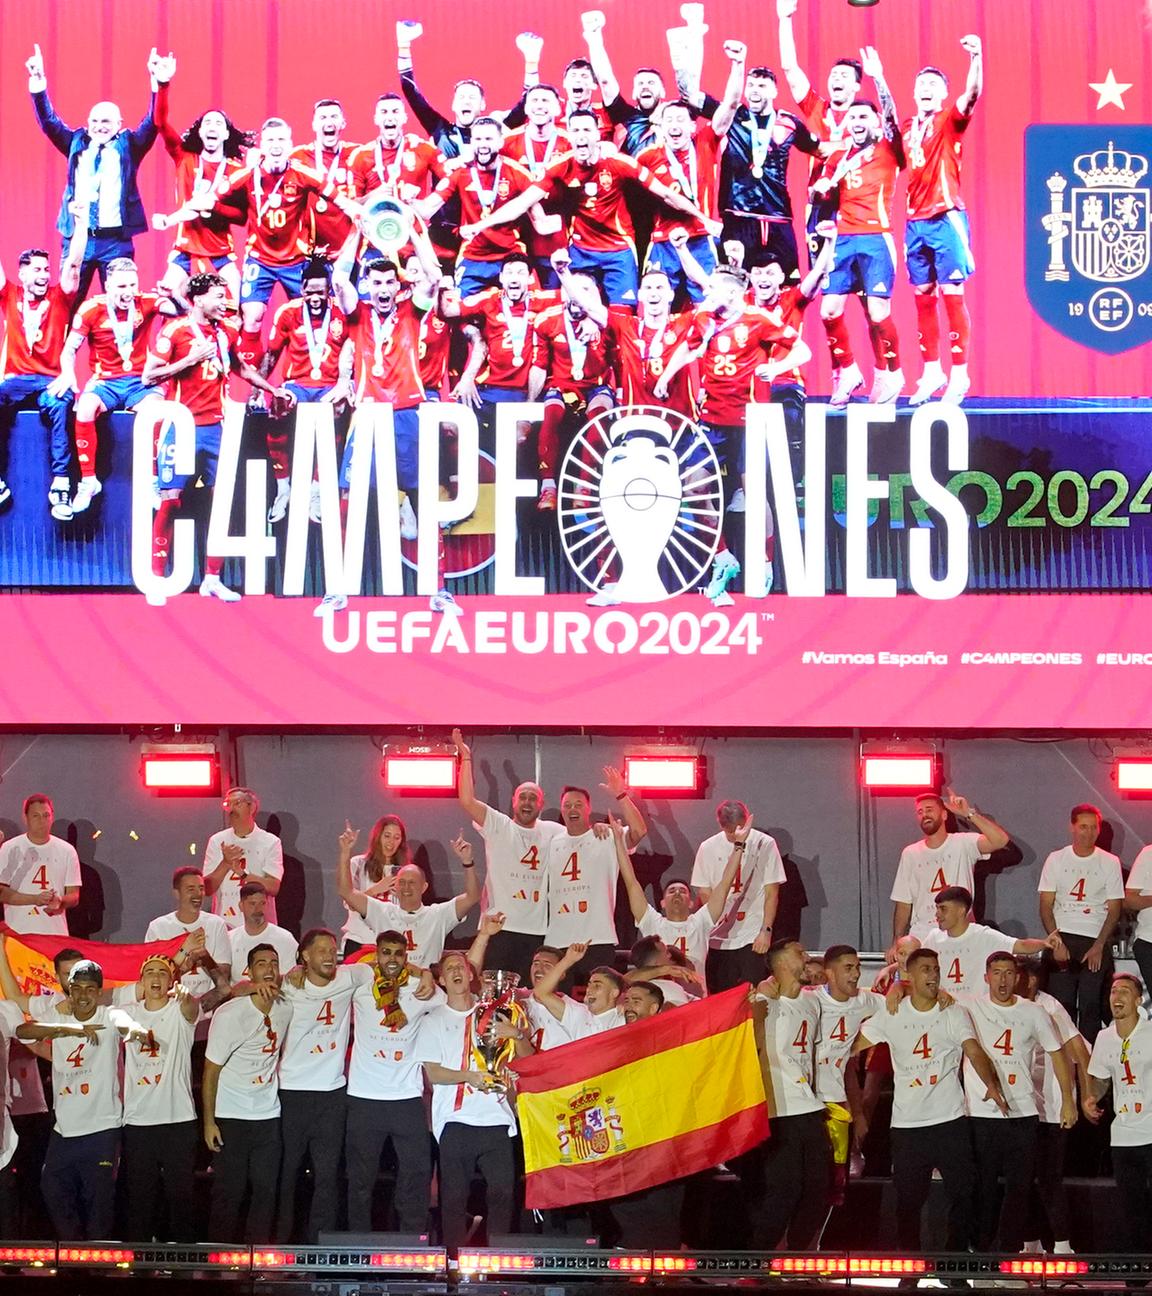 Der Spanier Dani Olmo hält die Trophäe während der Feierlichkeiten zum Europameistertitel der spanischen Mannschaft auf einer Bühne am Cibeles-Platz in Madrid, Montag, 15. Juli 2024.